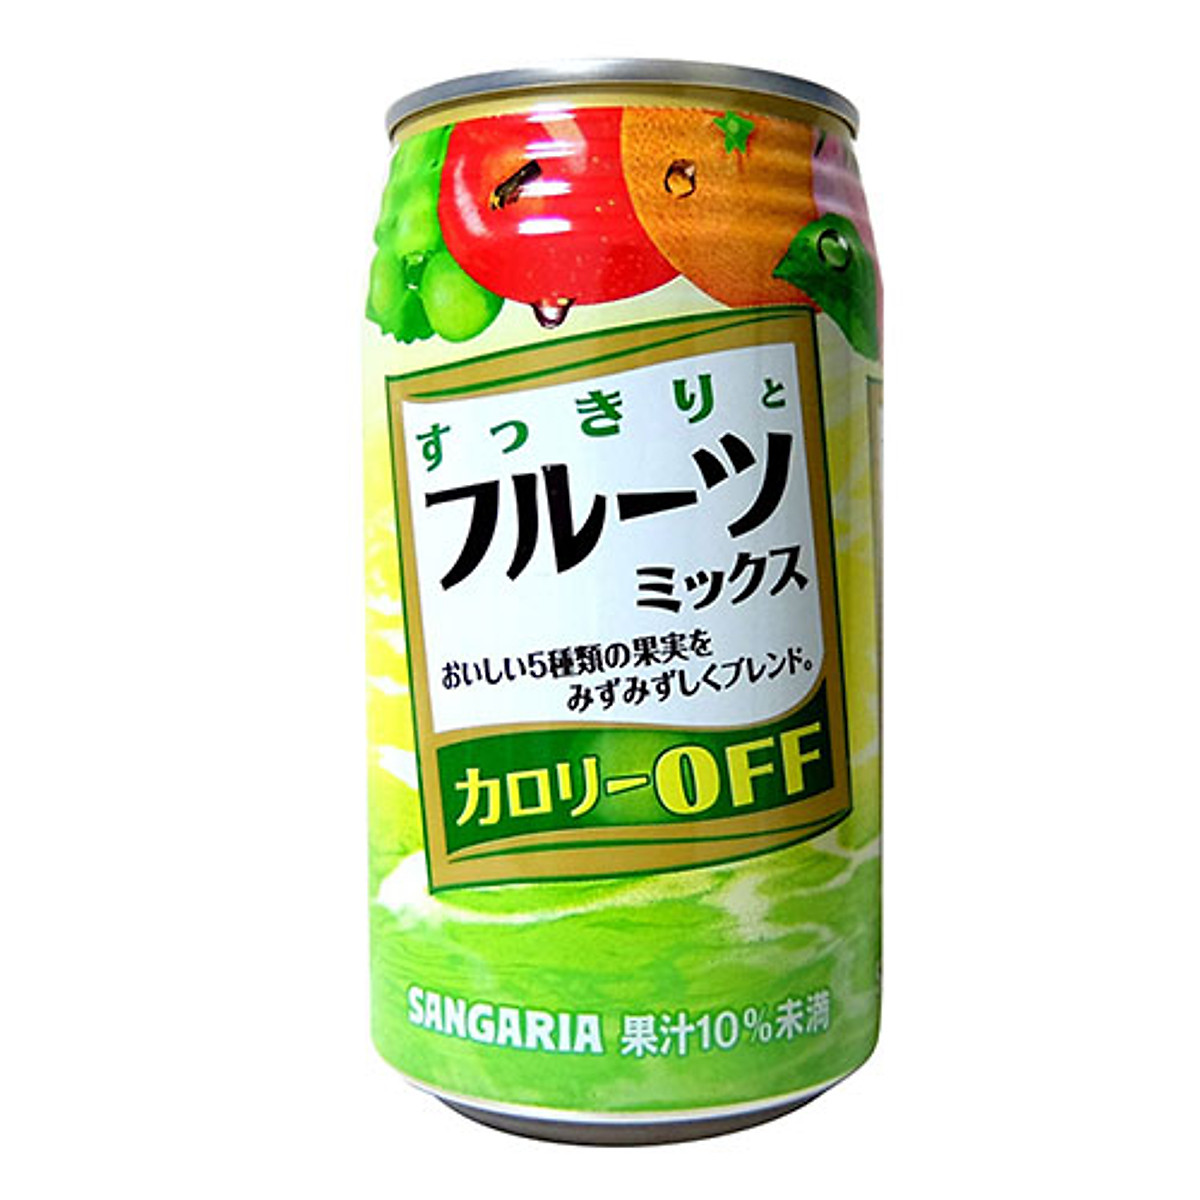 Nước ép trái cây Sangaria cắt giảm calories 340g | Cửa hàng Nhật Bản Hachi  Hachi | Tiki